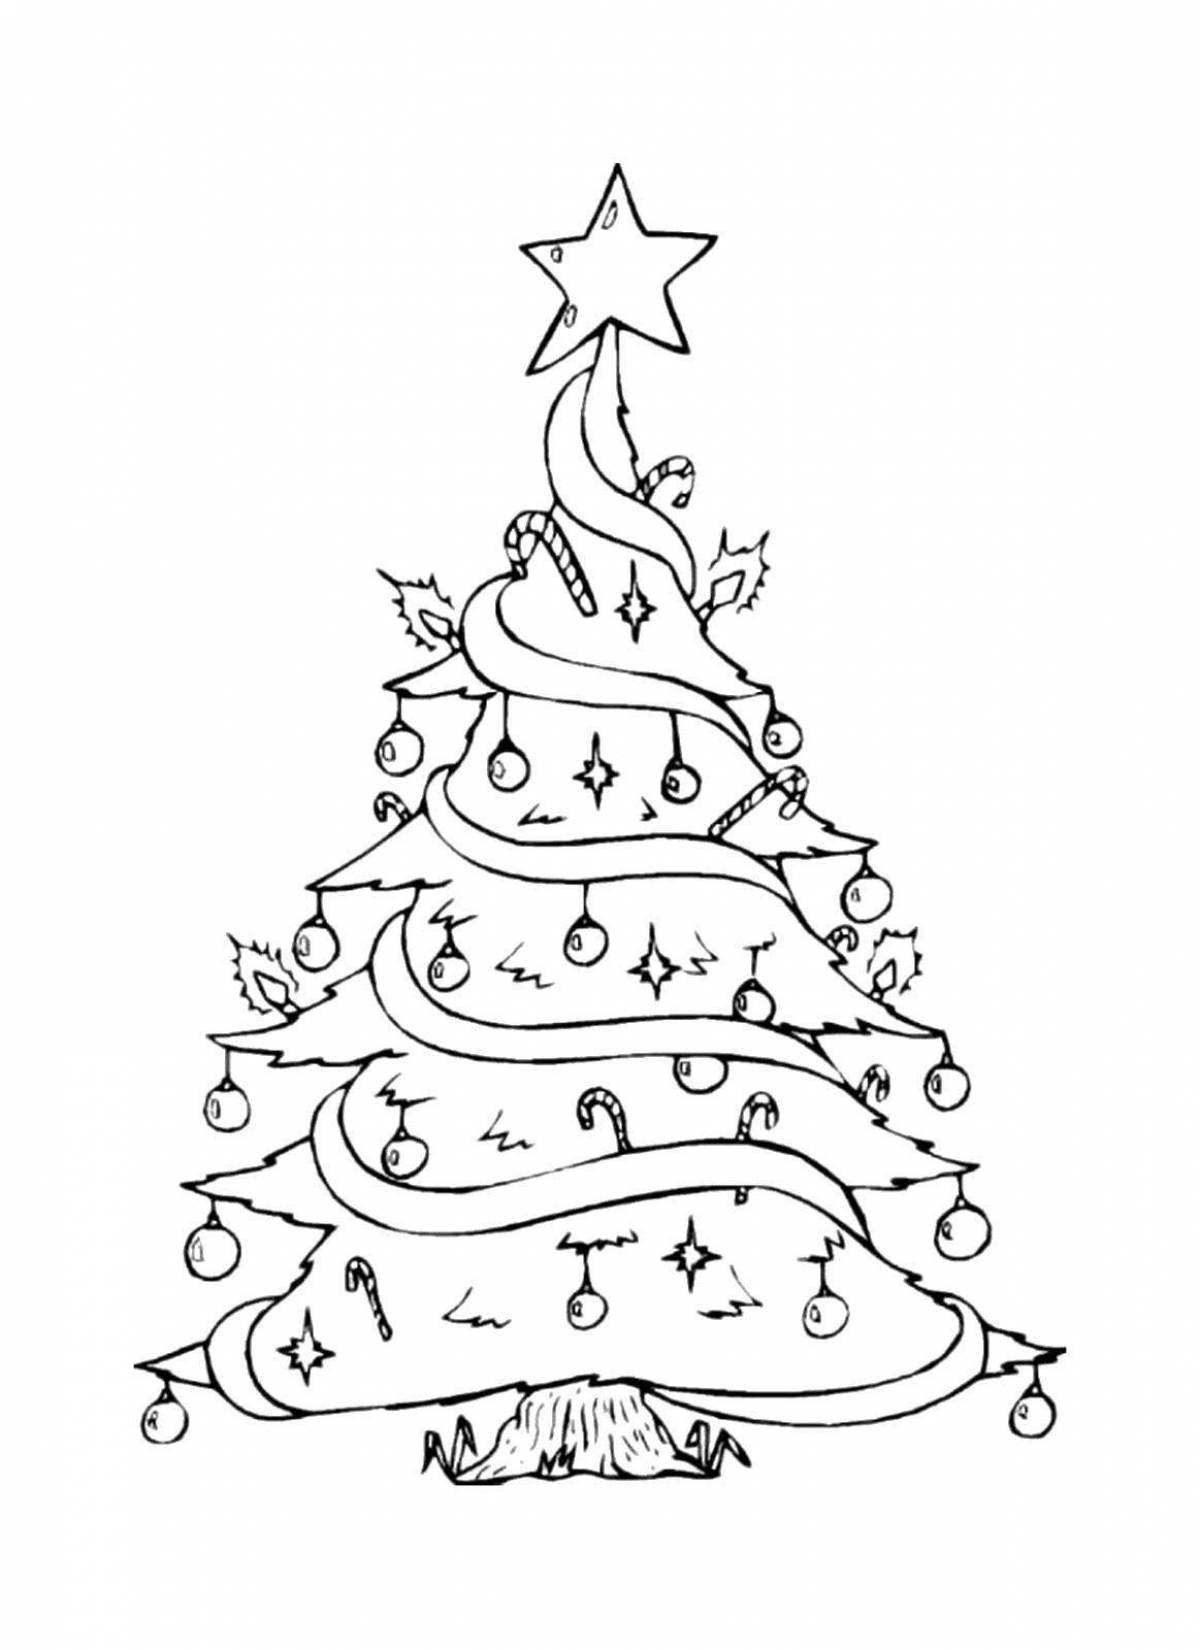 Раскраска сияющая рождественская елка для детей 6-7 лет